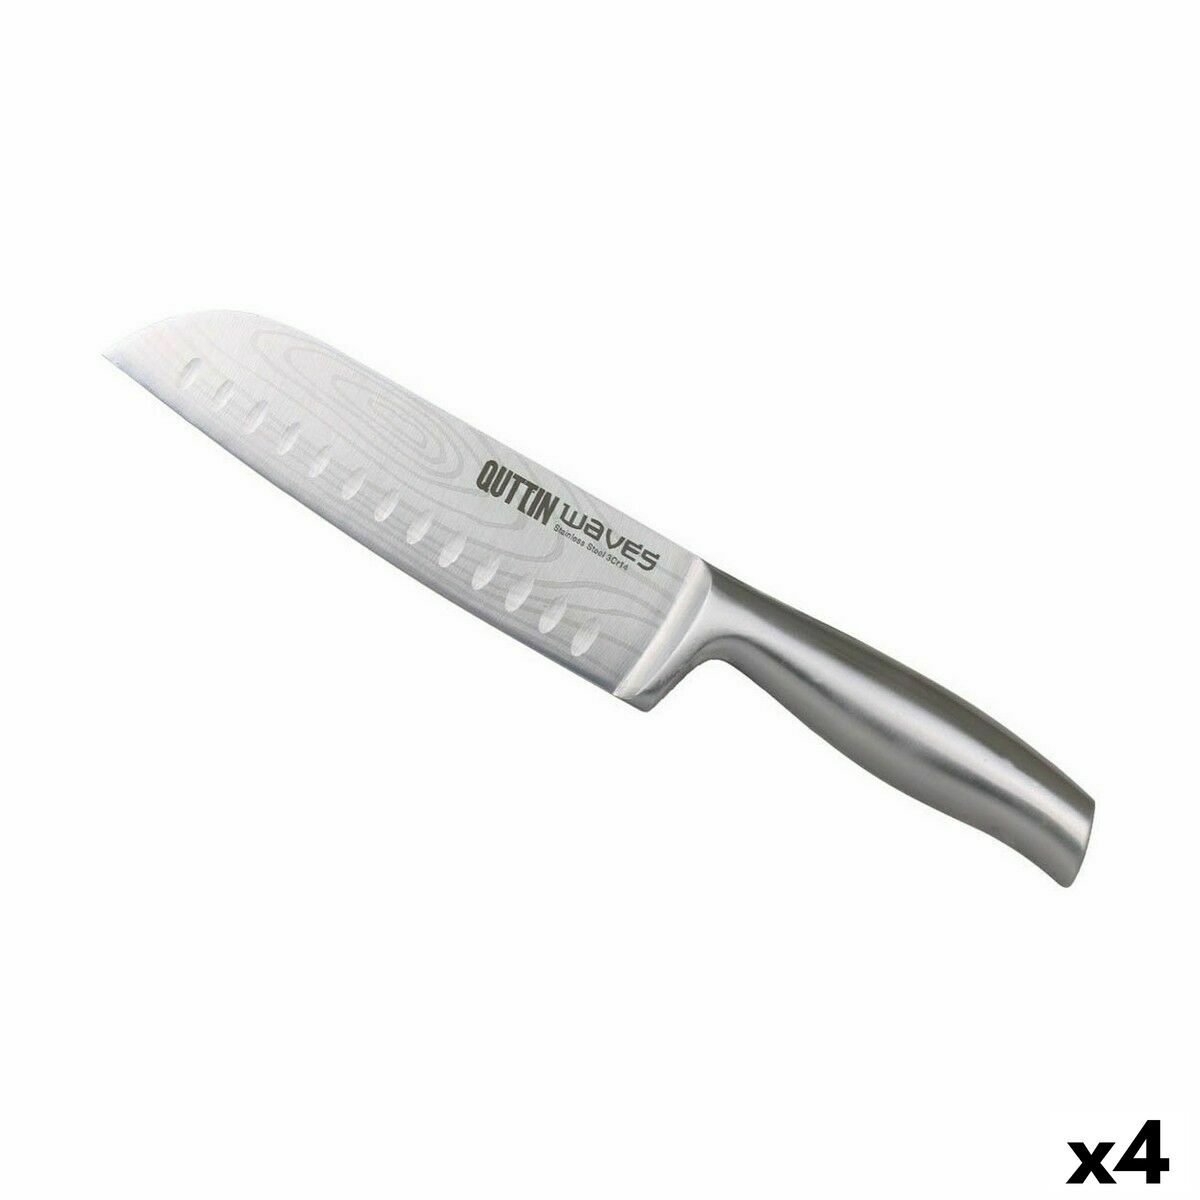 Кухненски Нож Quttin Waves 13 cm (4 броя)